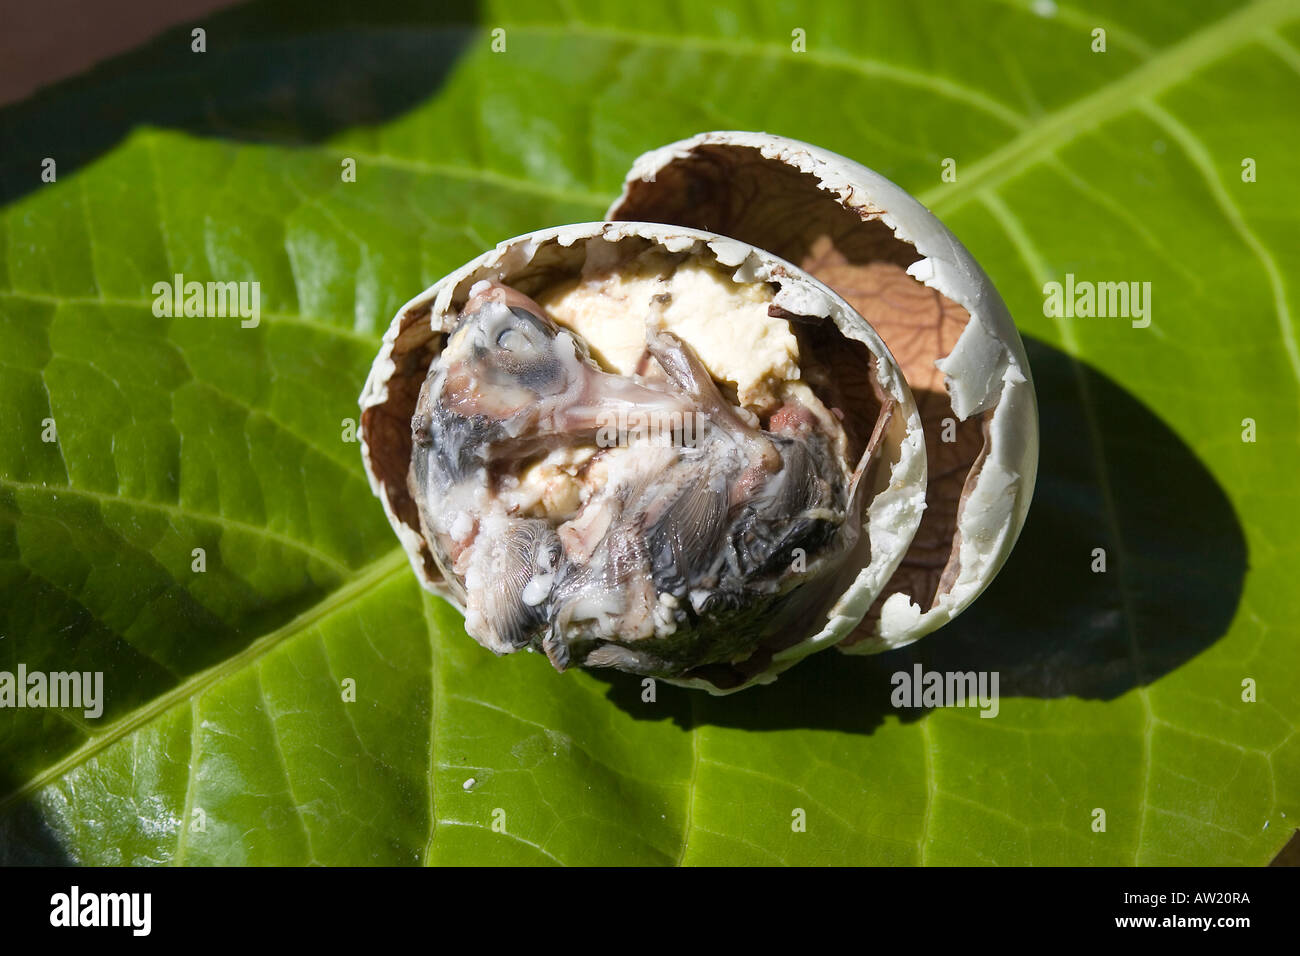 Balut ( duck's egg couvée pendant environ 17 jours), la délicatesse sur les Philippines Banque D'Images